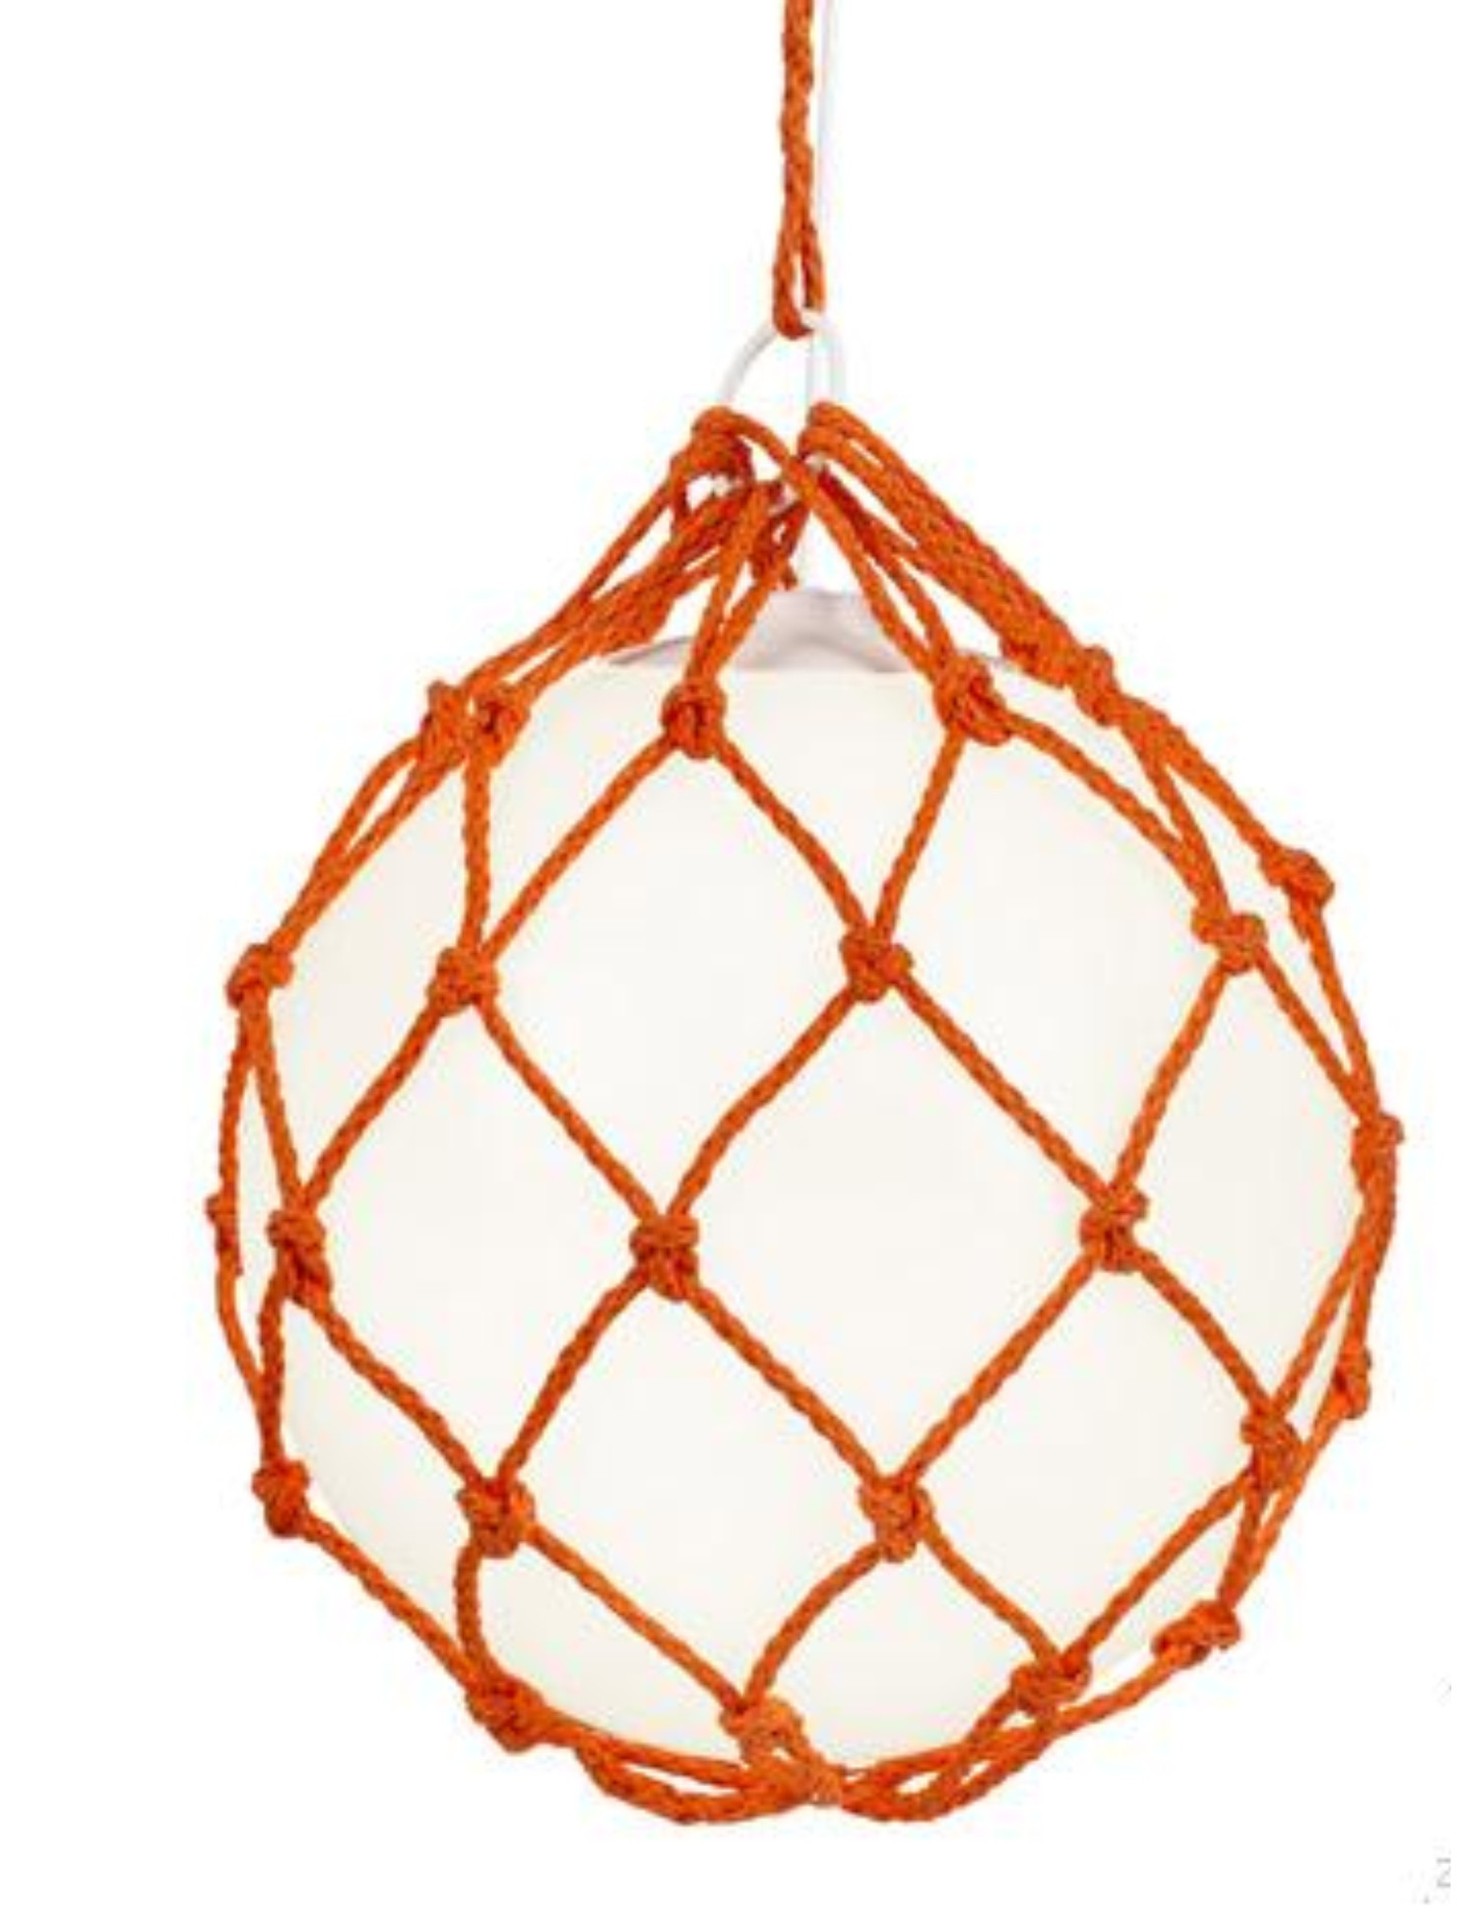 一根绳子的万种风情~美国艺术家Windy Chien将绳子玩出了新高度~ - 普象网